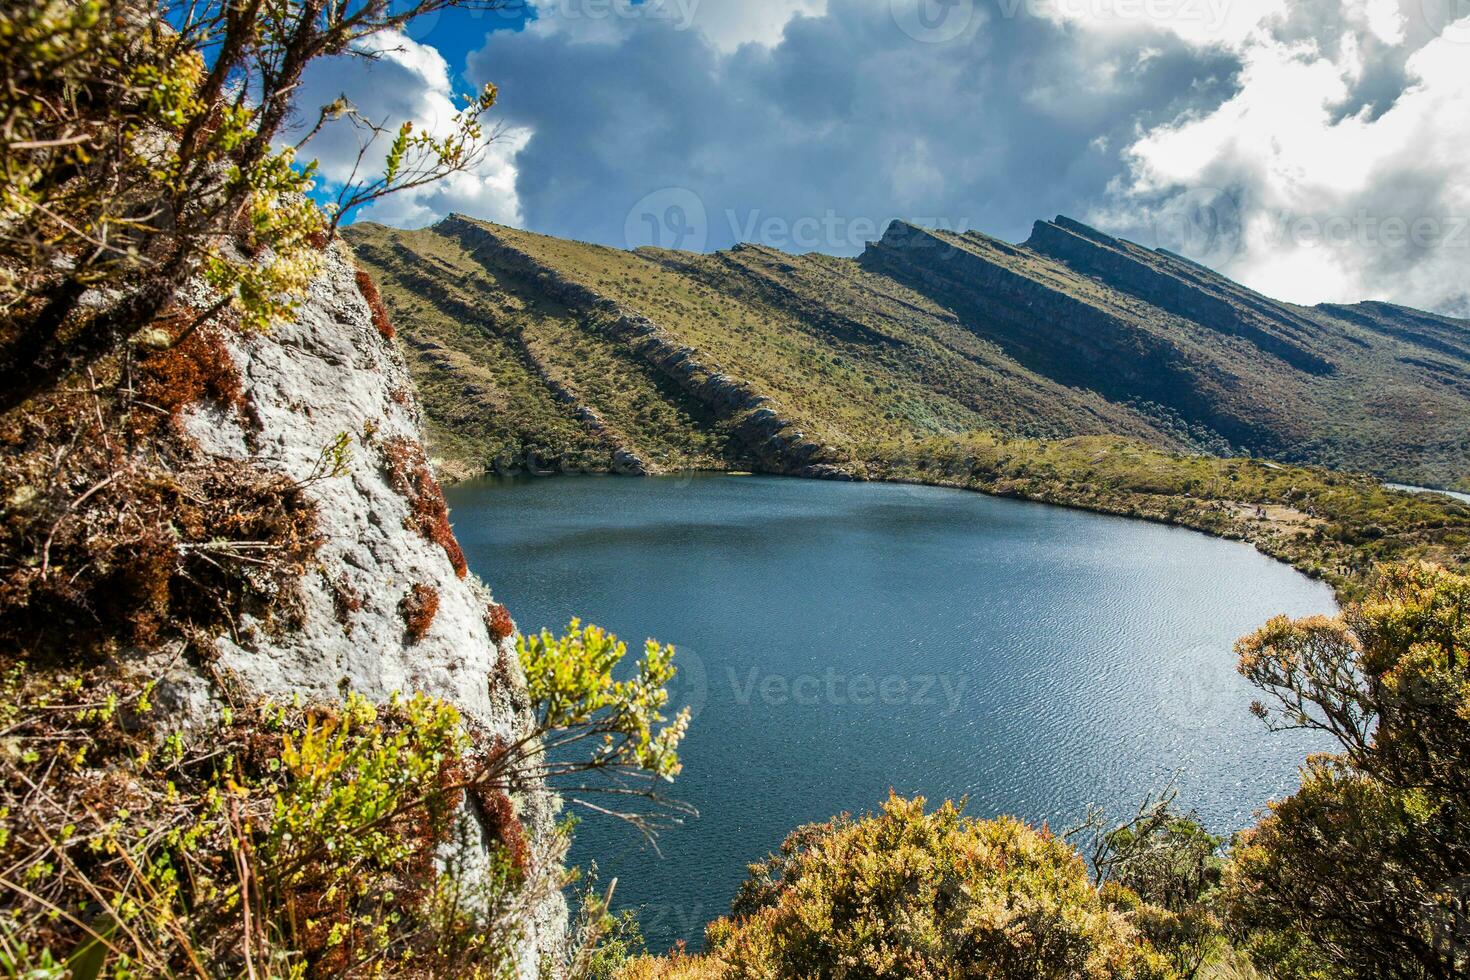 skön landskap av colombianska andean bergen som visar paramo typ vegetation i de avdelning av cundinamarca foto